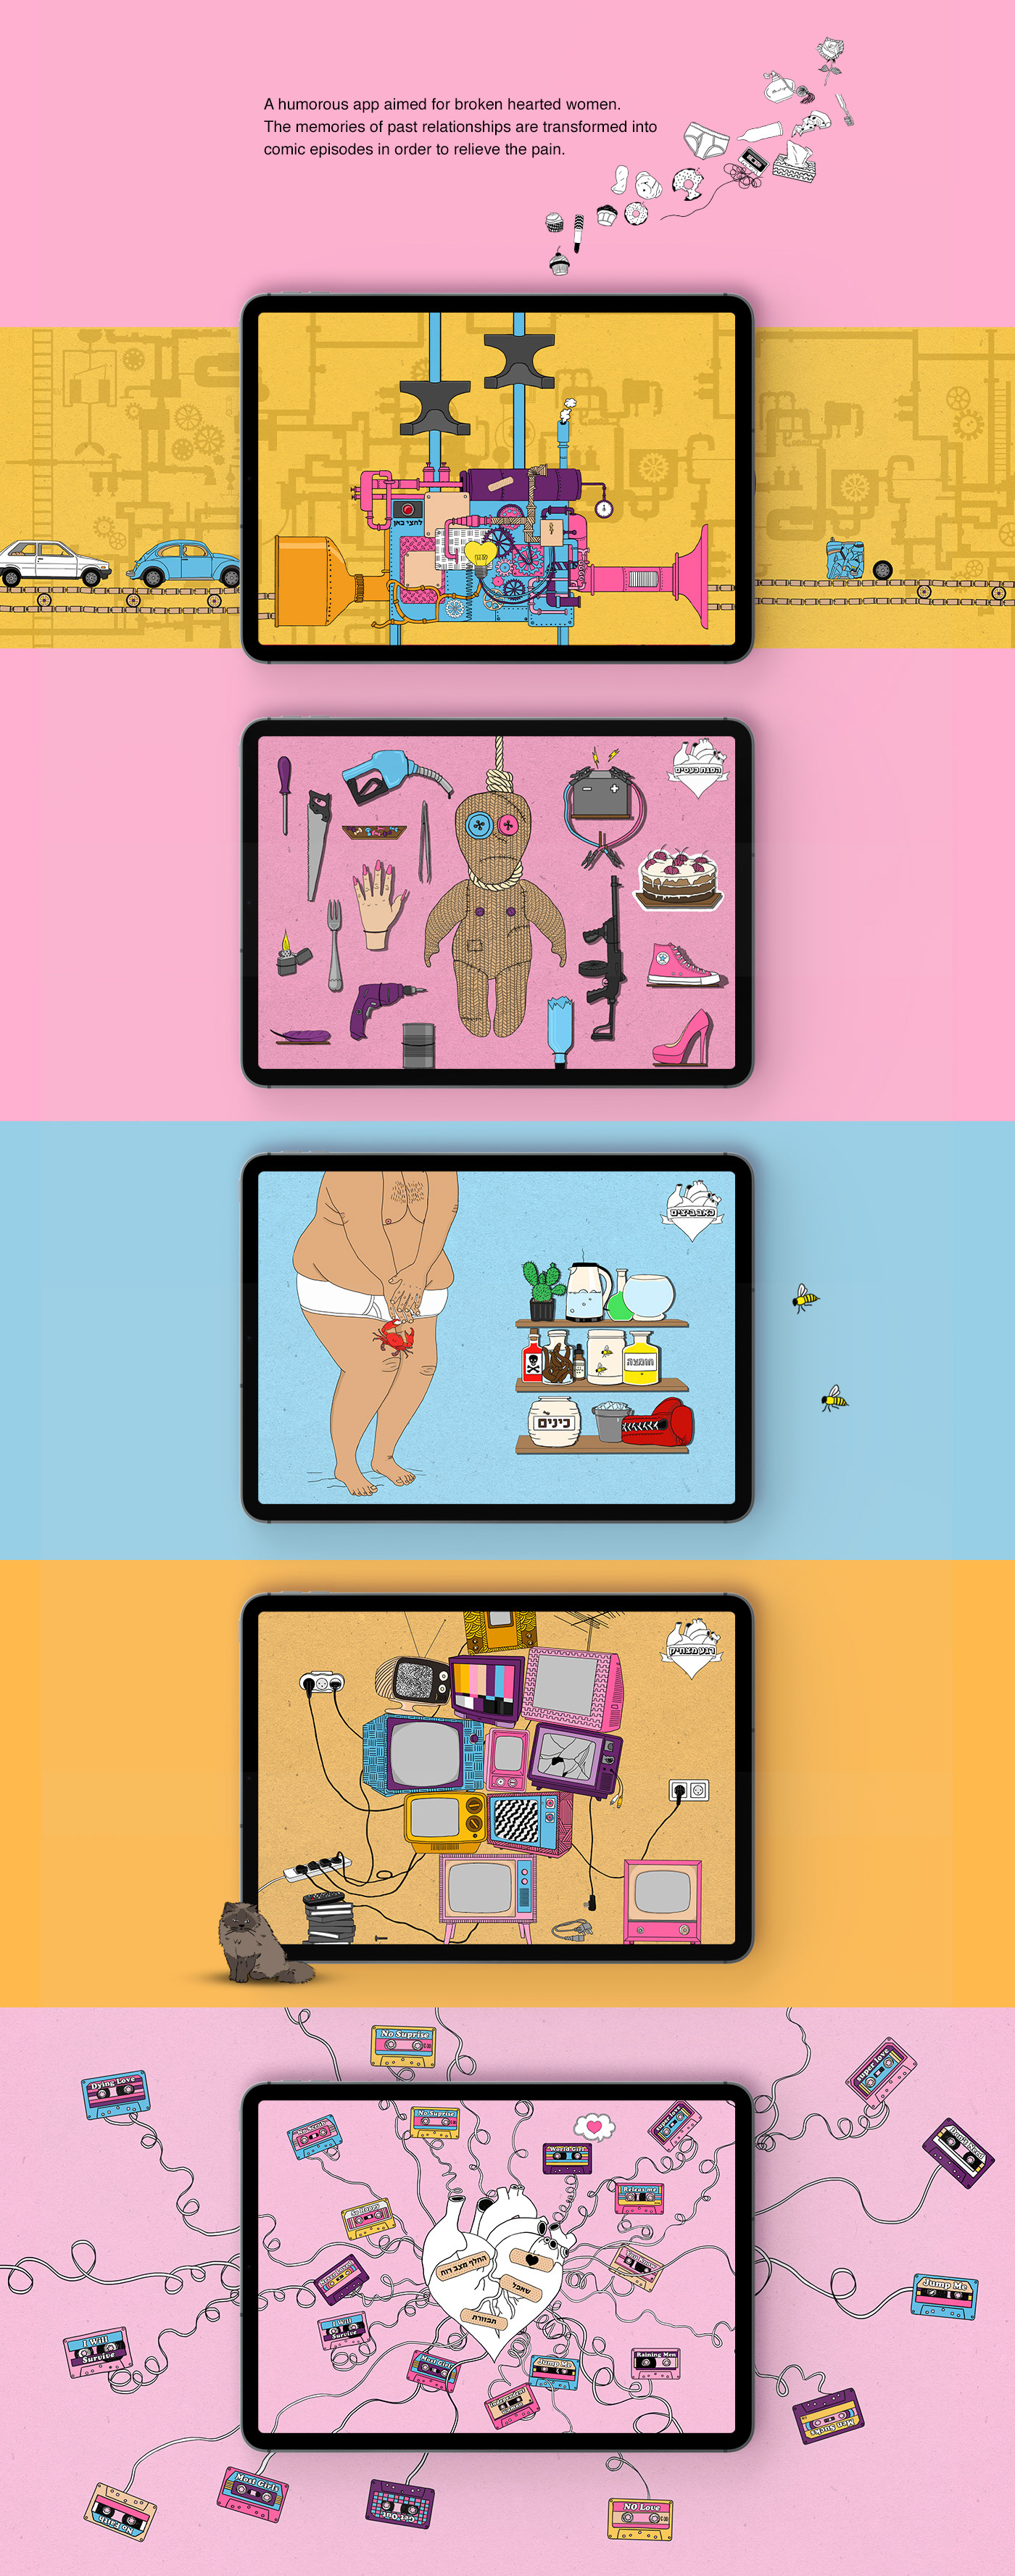 die broken heart app iPad alcohol smashing voodoo doll Comfort food breakup pink wizo Mobile app Ex interactive app